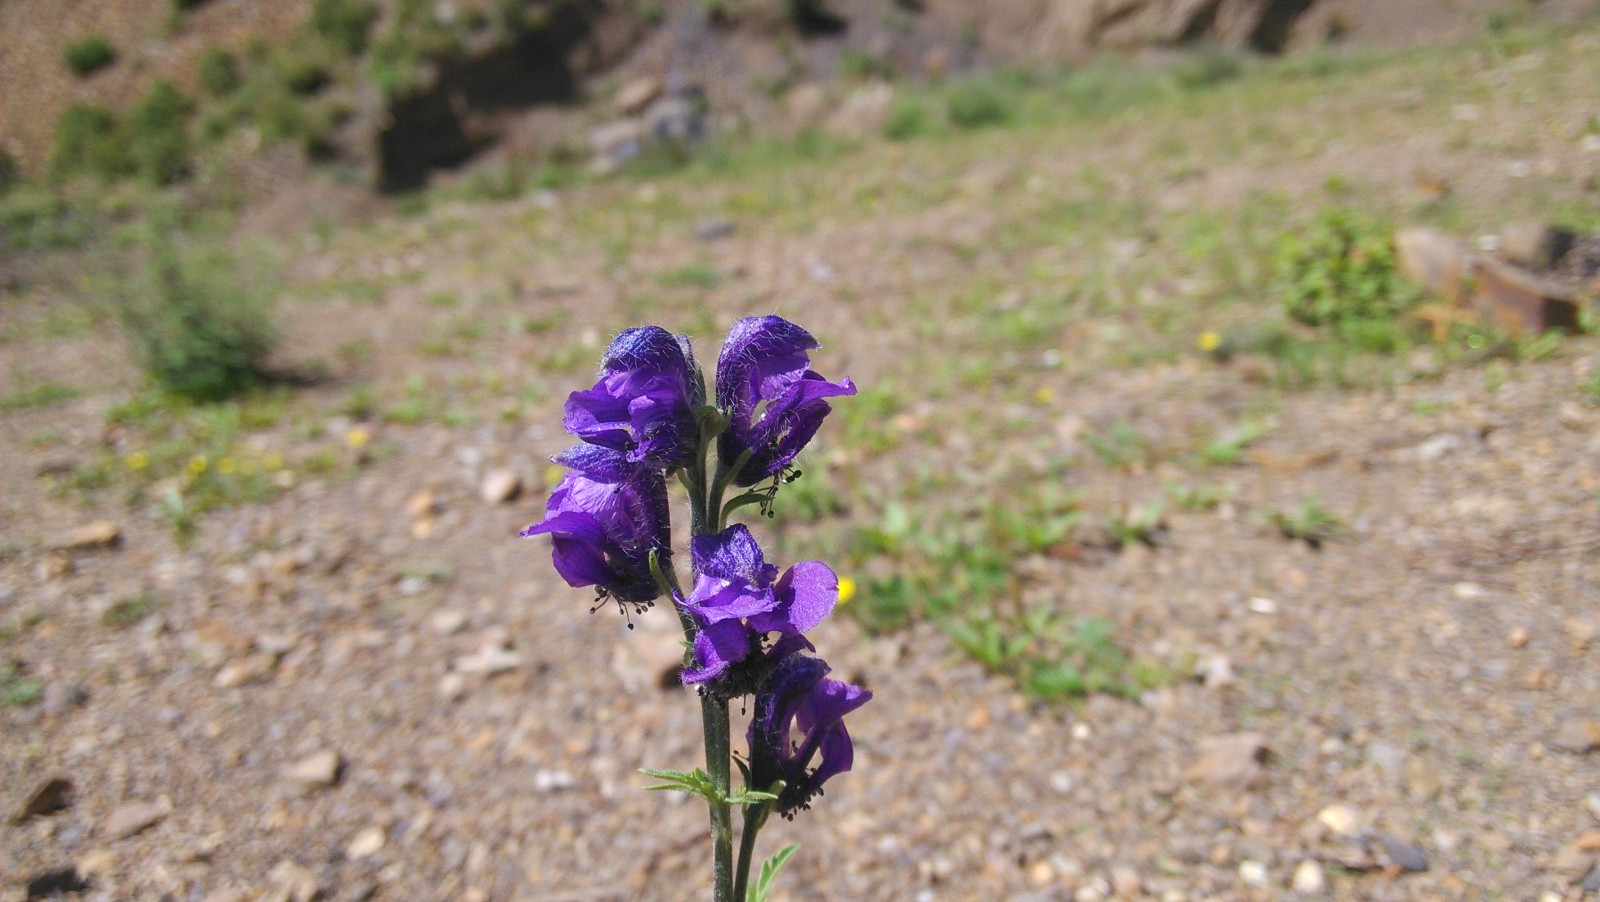 一朵紫色的花，独尊一地，颇显高贵